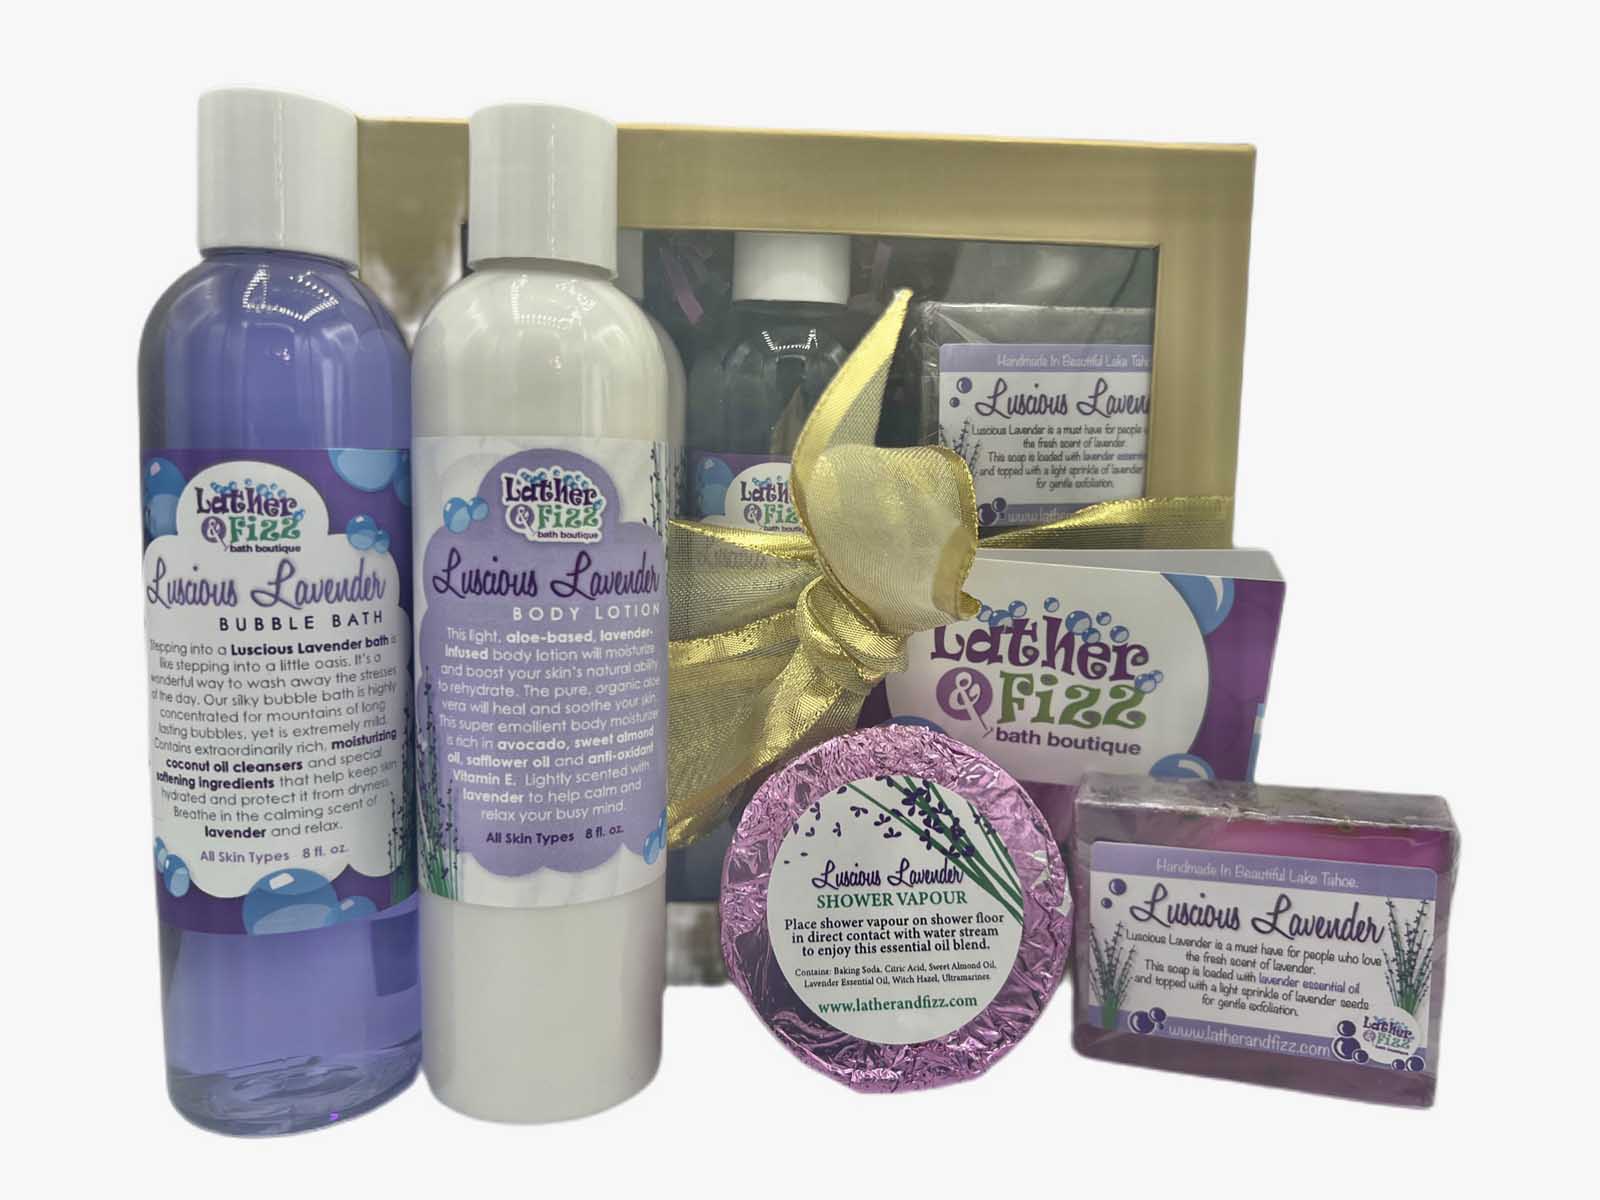 https://latherandfizz.com/wp-content/uploads/2018/11/whisk-me-away-lavender-gift-set1.jpg